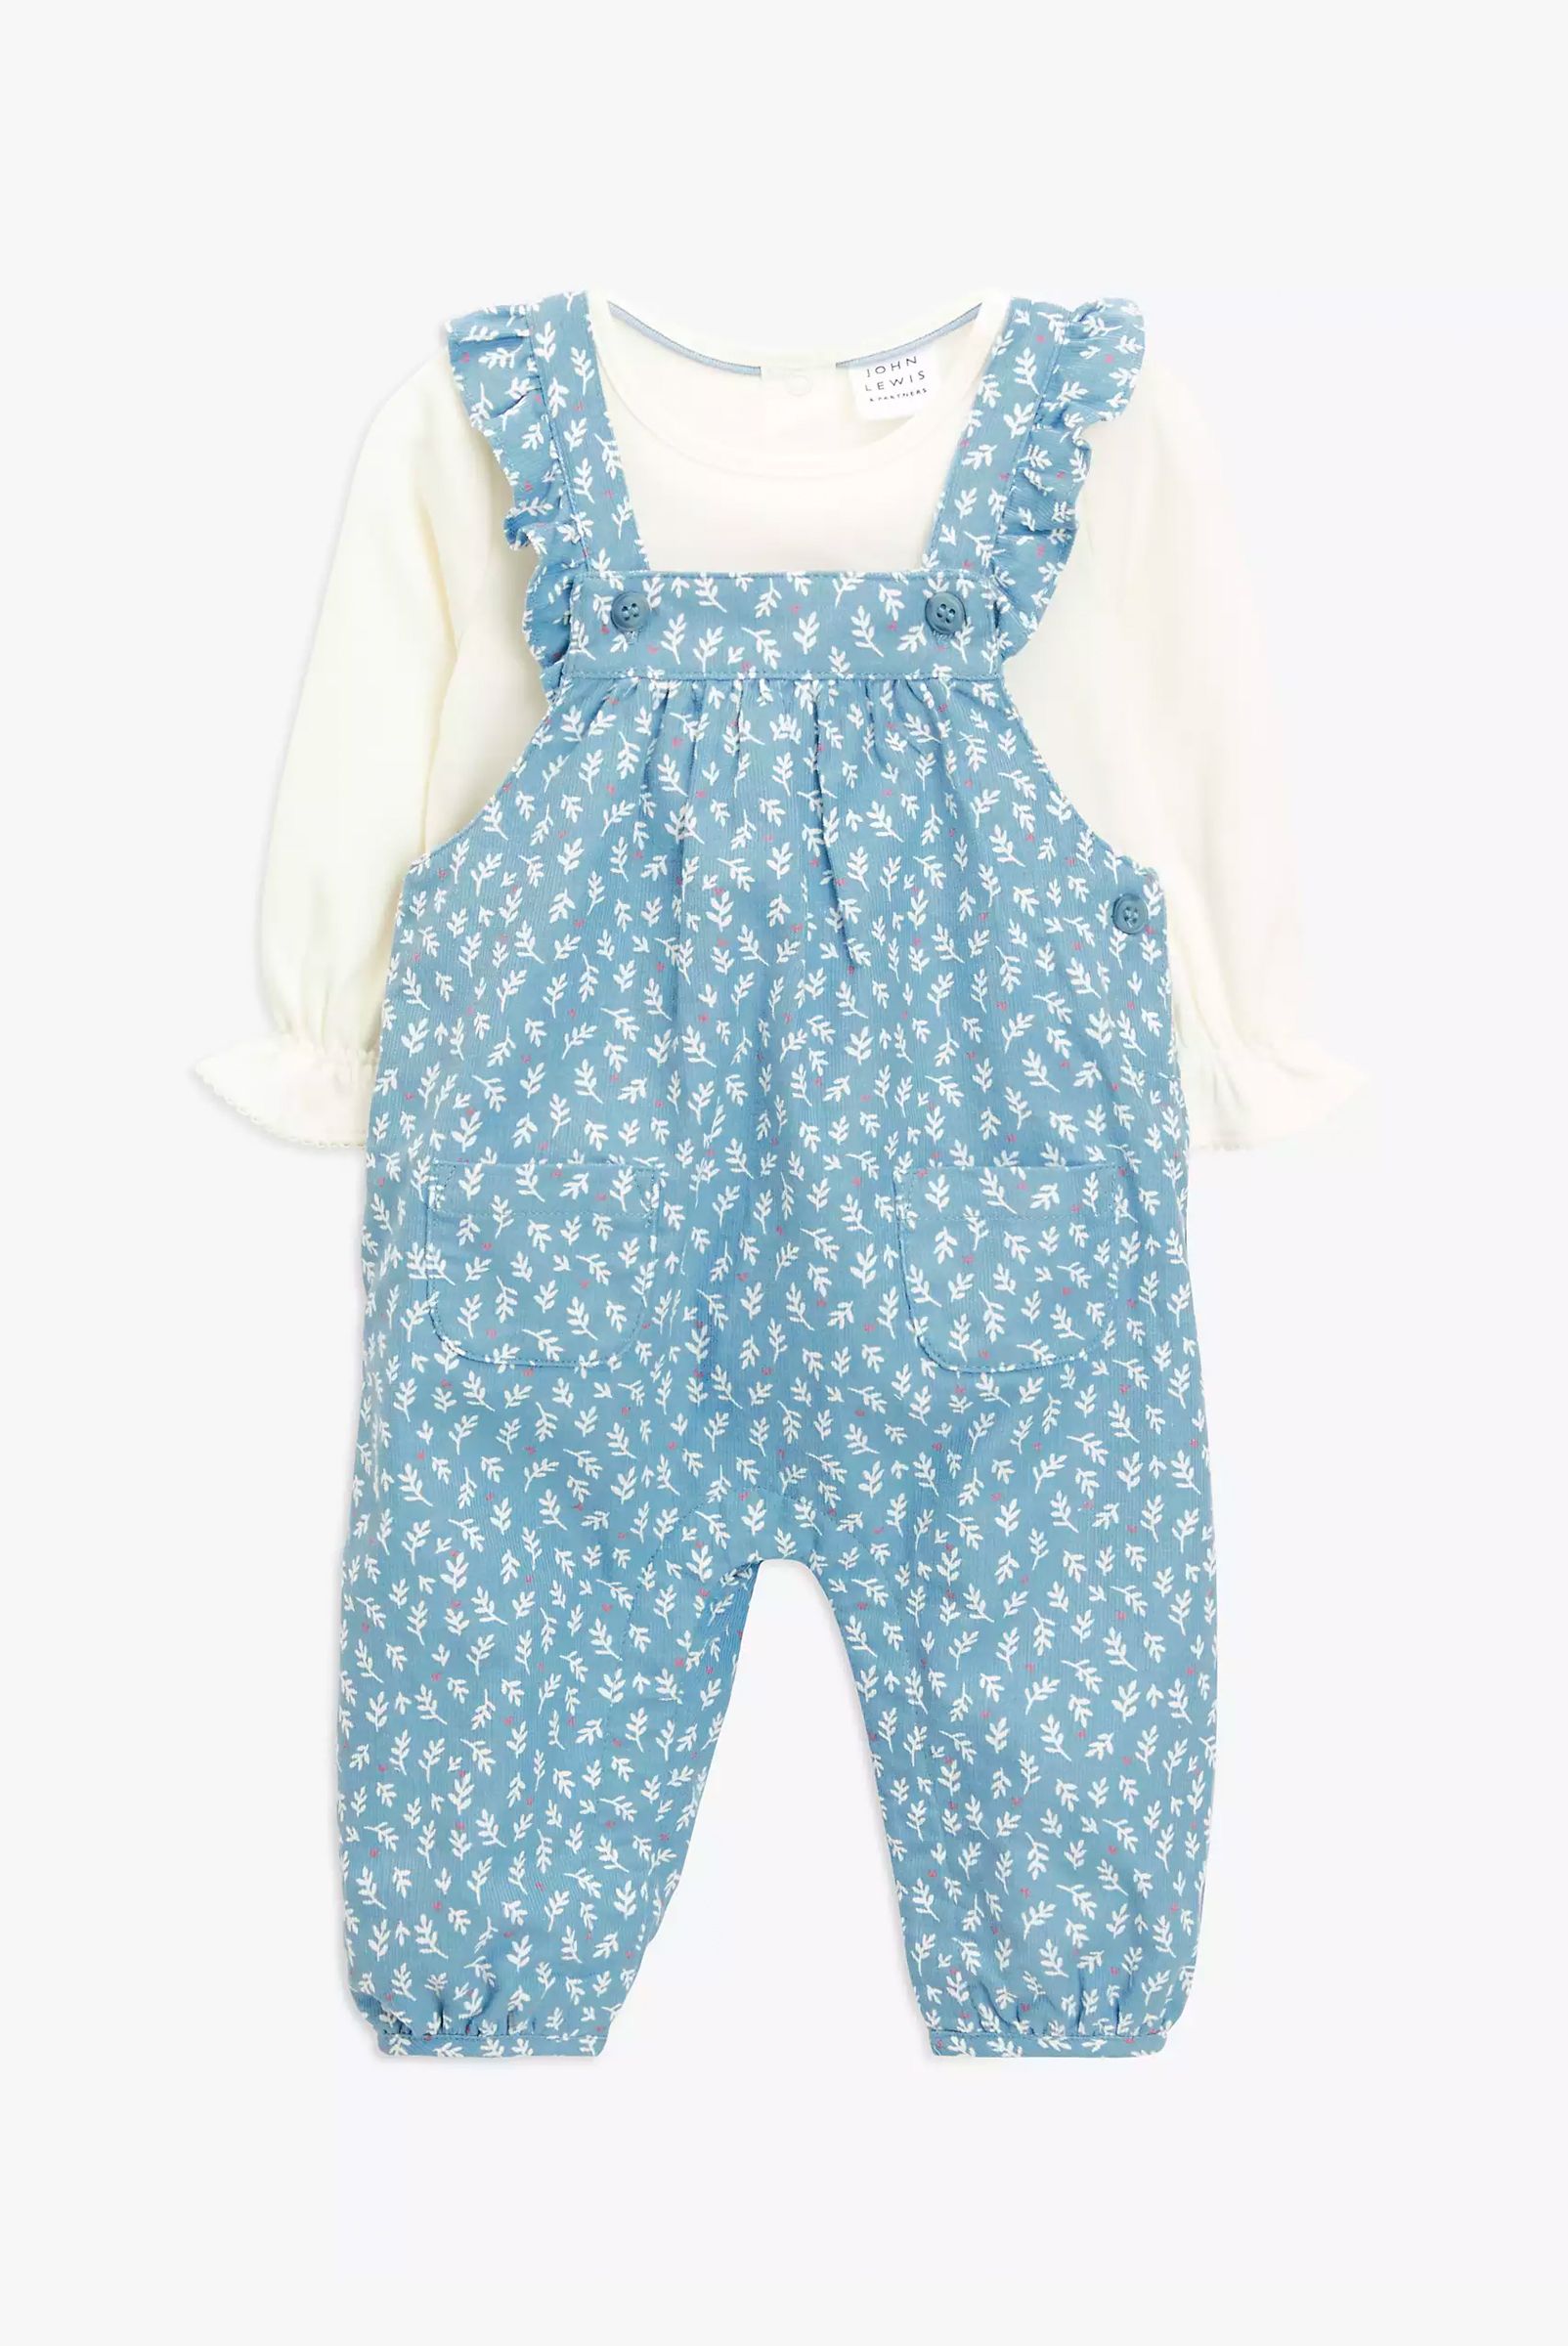 John Lewis Baby Ruffle Bodysuit & Leaf Print Dungaree Set, Blue, £20